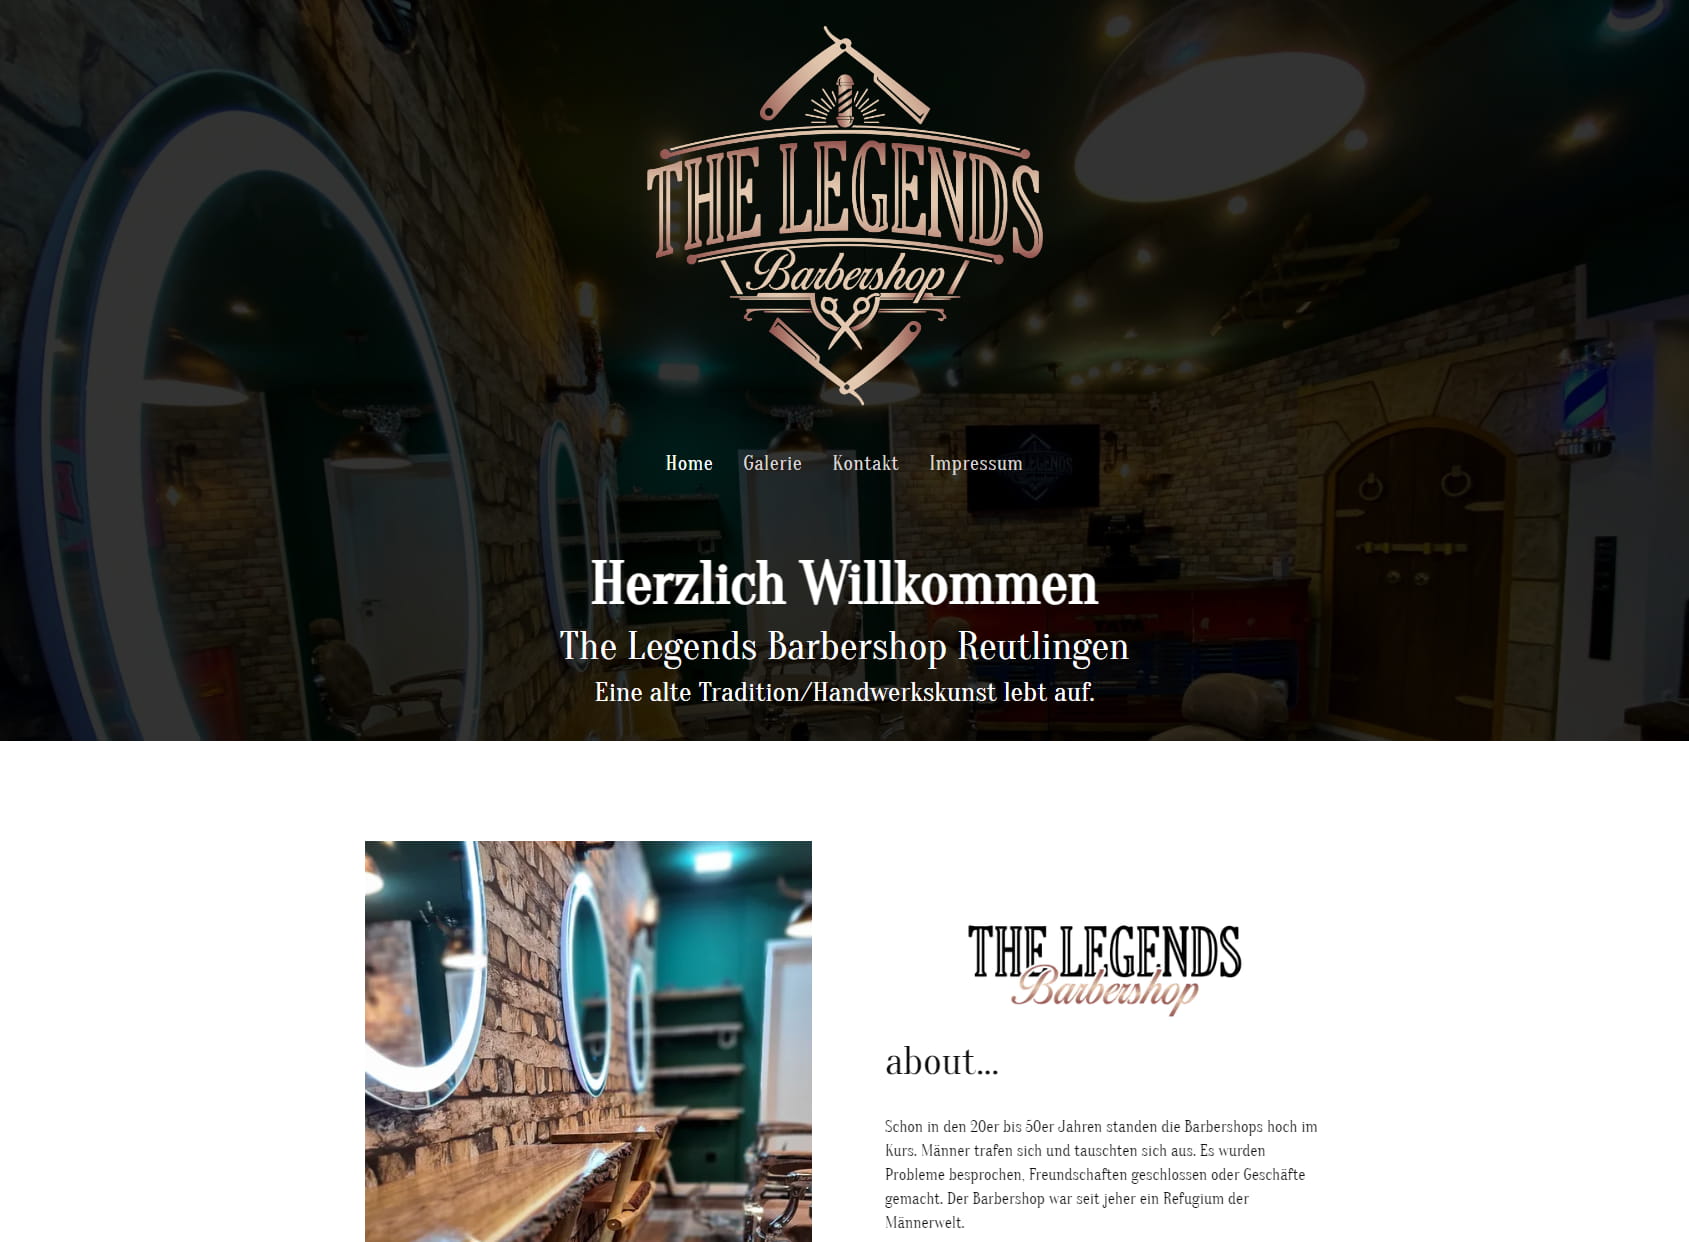 The Legends Barbershop Reutlingen